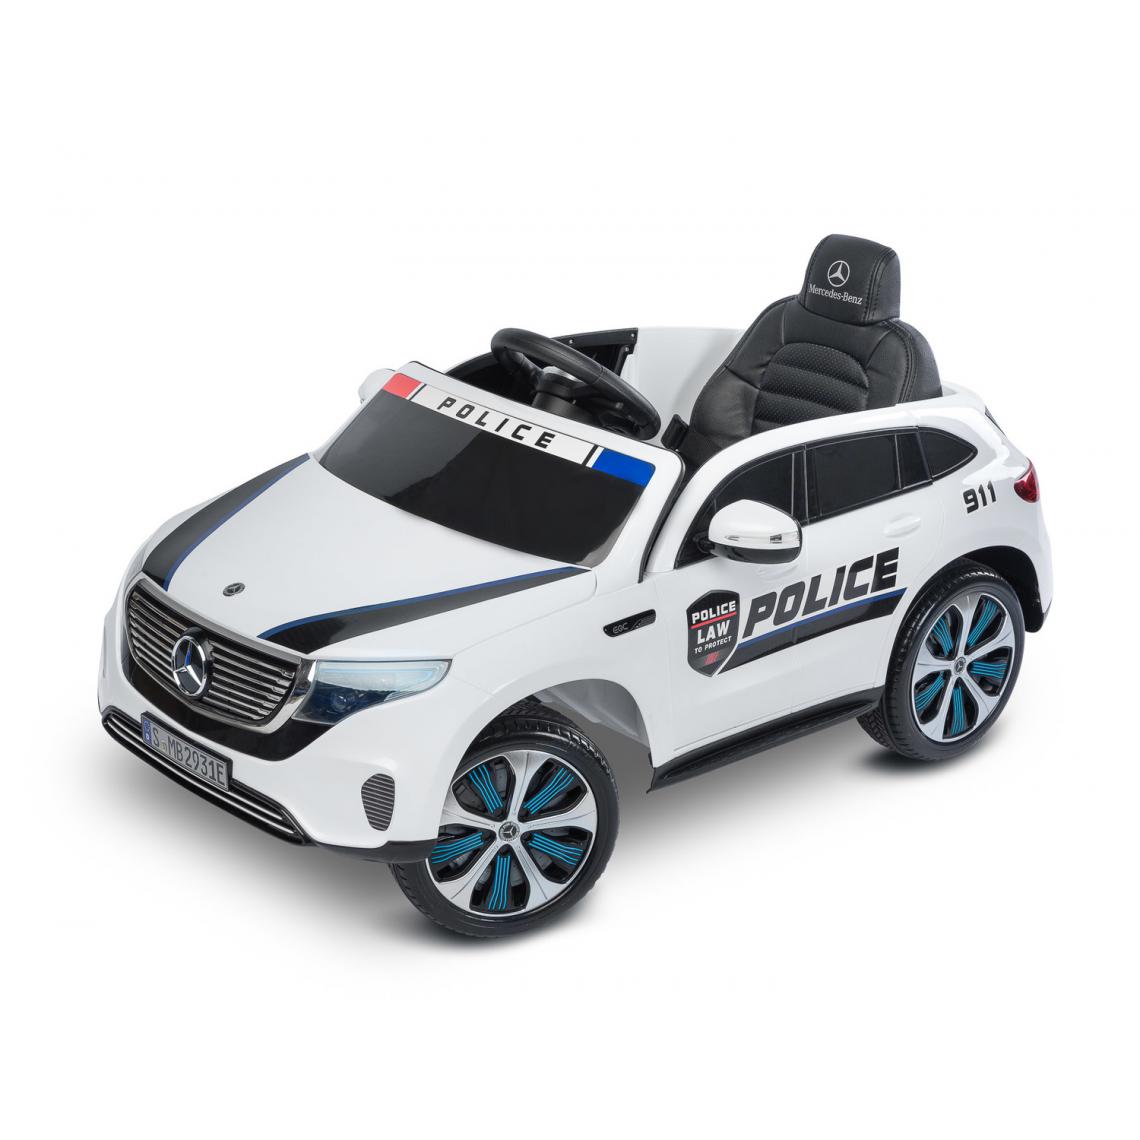 Hucoco - NELLO - Voiture d'enfant BMW - ge 3-8 ans - Batterie - Harnais de sécurité - Voiture de police - Blanc - Véhicule électrique pour enfant